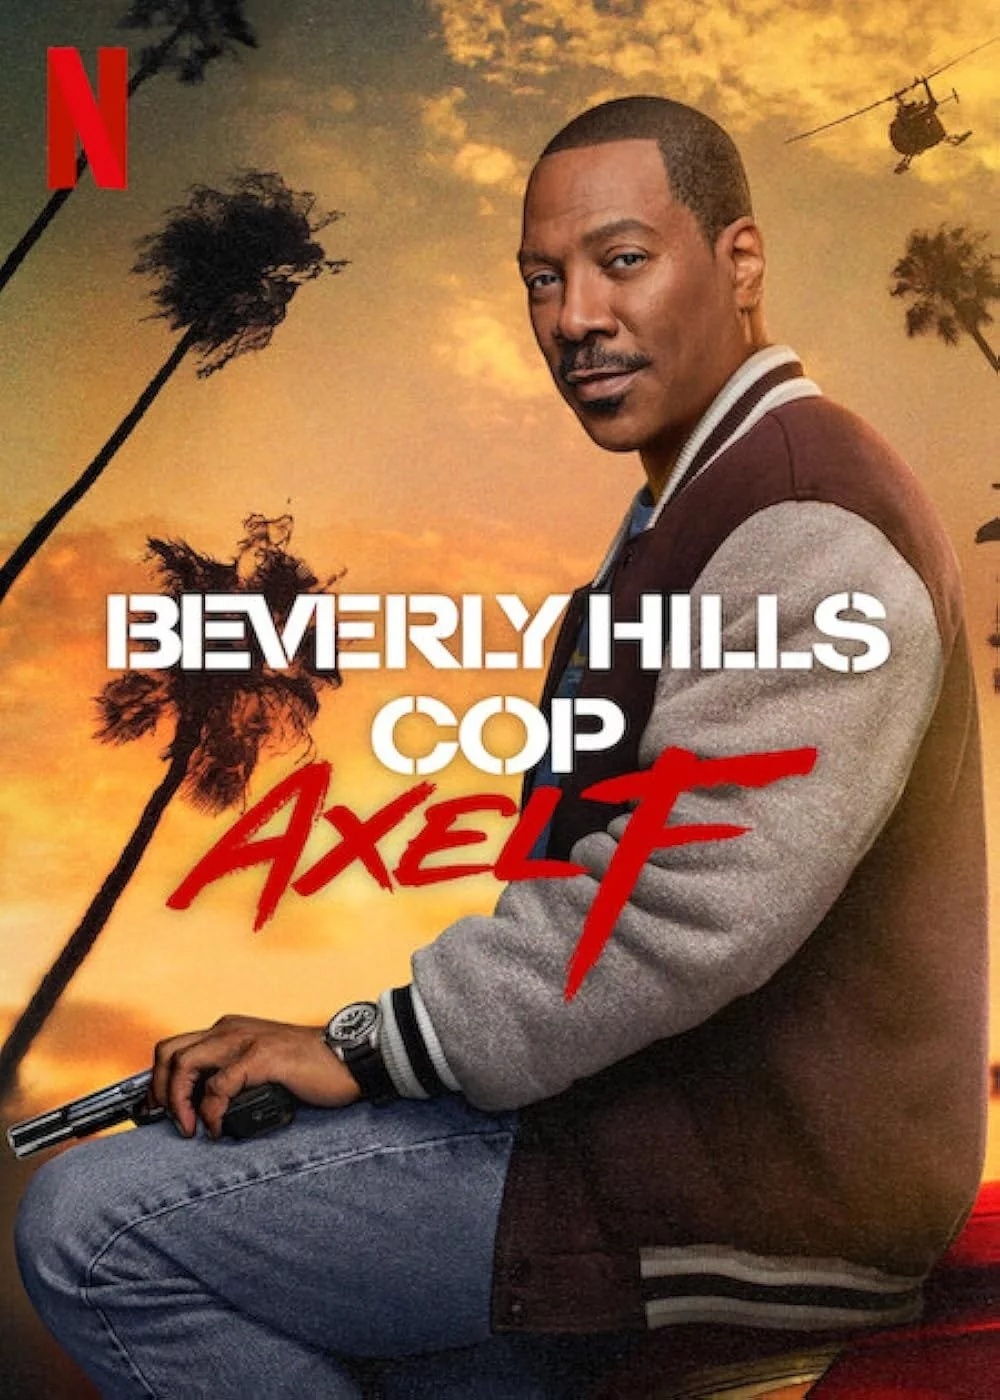 Gliniarz z Beverly Hills: Axel F - recenzja filmu. Netflix funduje powrót do ery VHS